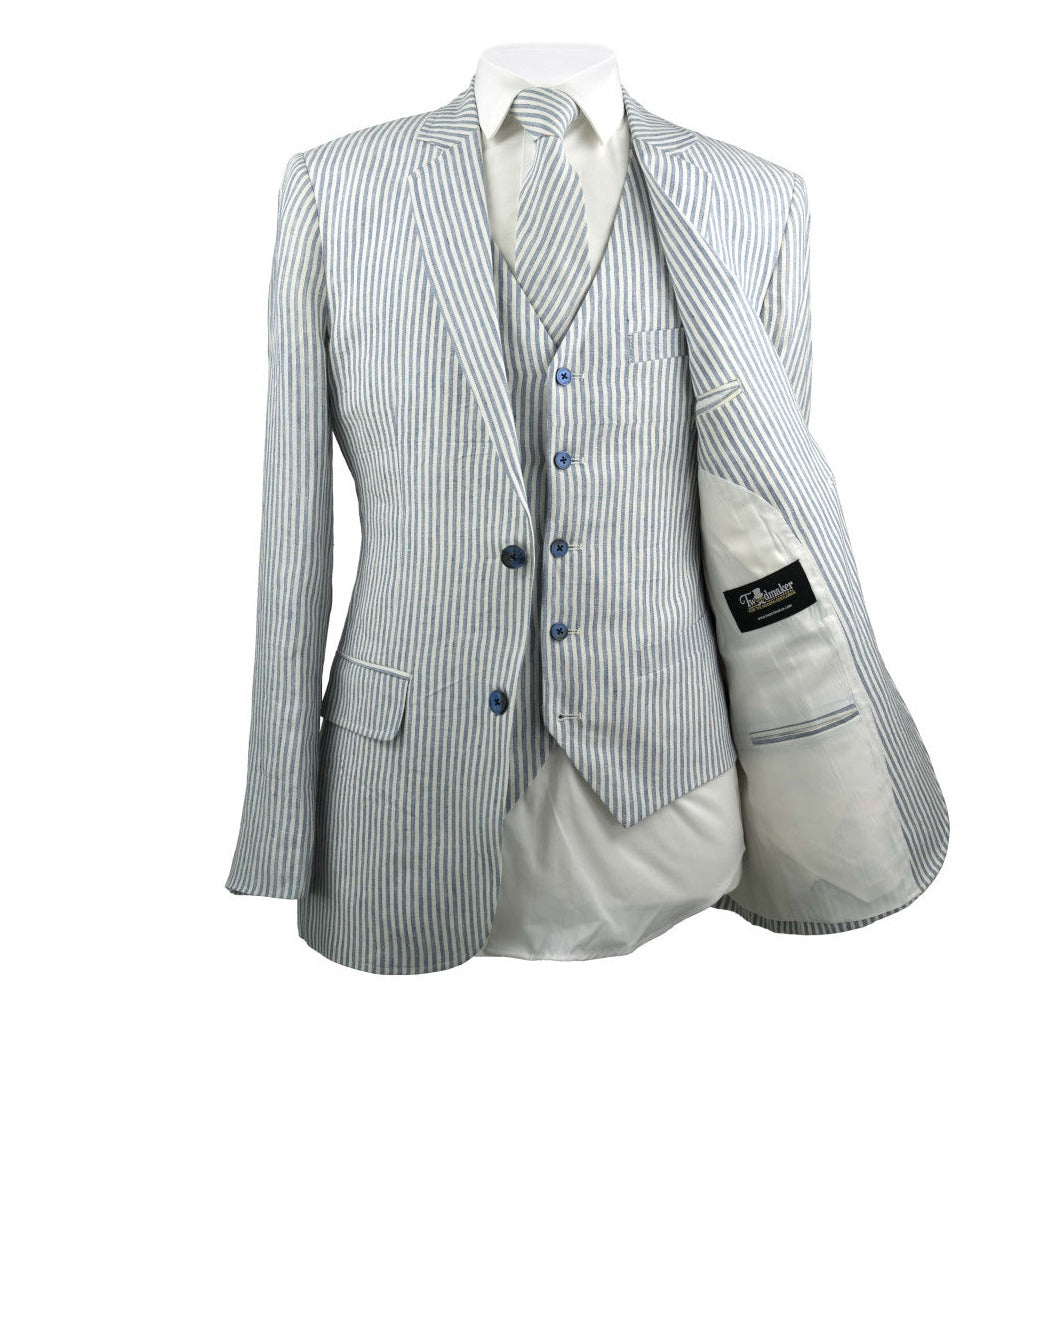 White & Blue Stripe Linen 3 Piece Suit